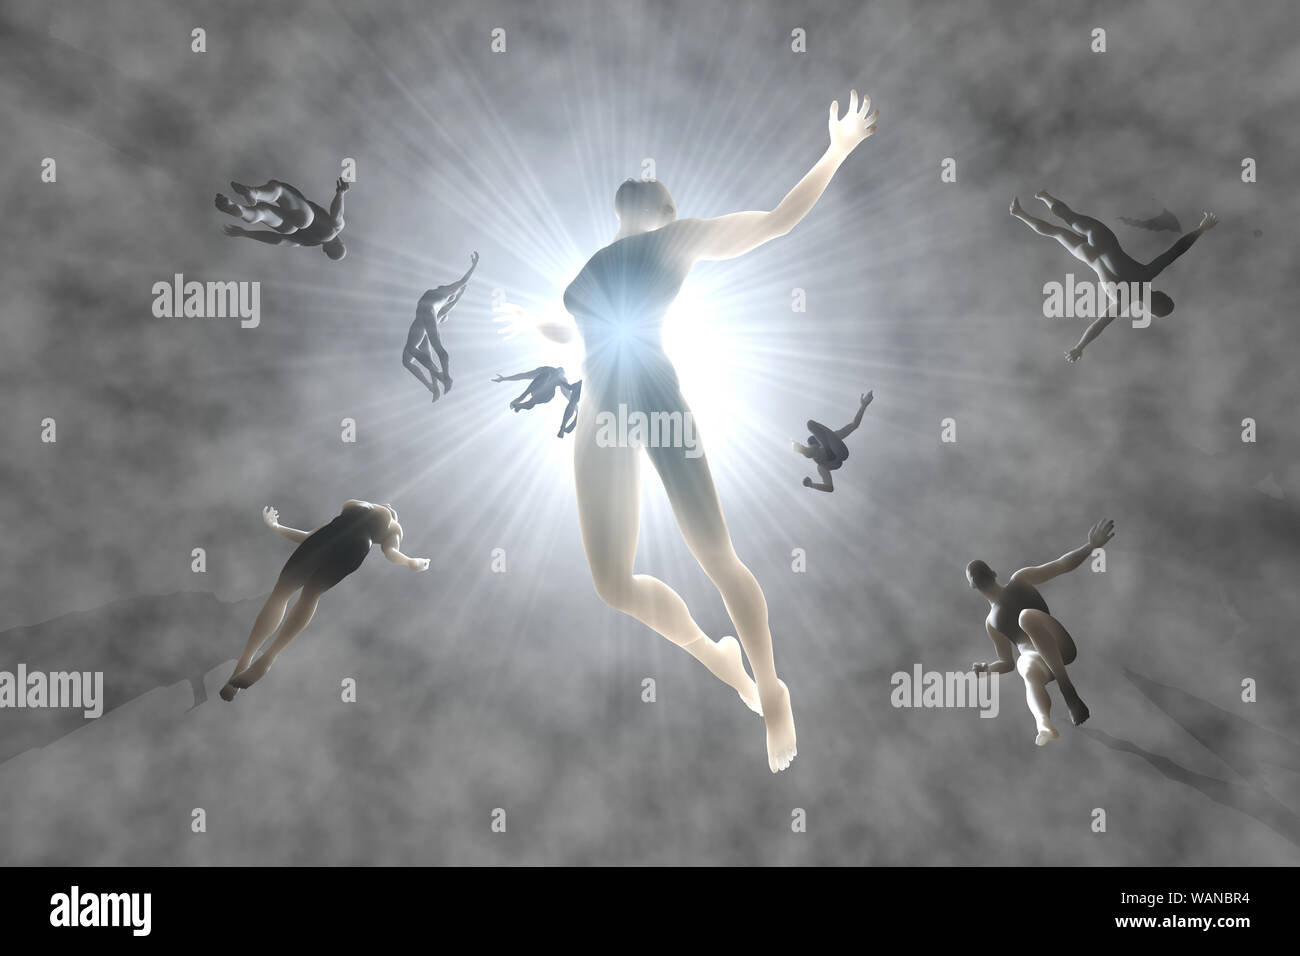 Gerenderten 3D-Abbildung der Seelen von Verstorbenen Menschen strömen in das weiße Licht und jenseits des Himmels. Stockfoto